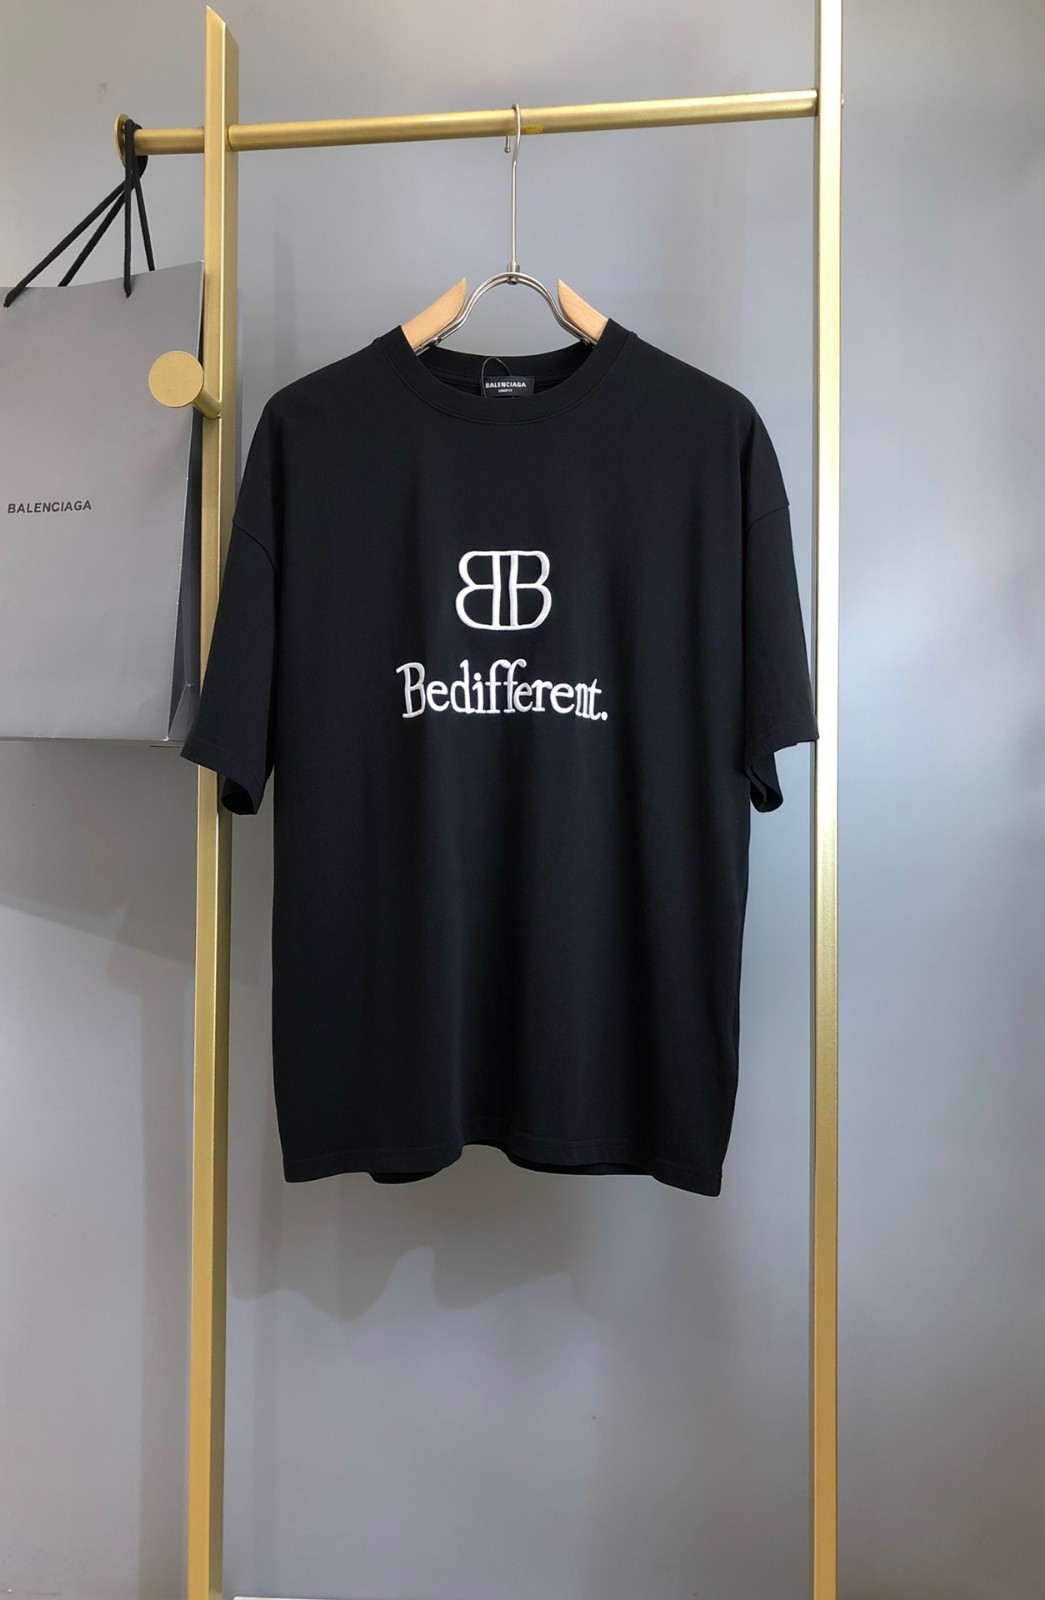 バレンシアガ Tシャツ コピー クルーネック BB刺繍 ロゴ 半袖Tシャツ 